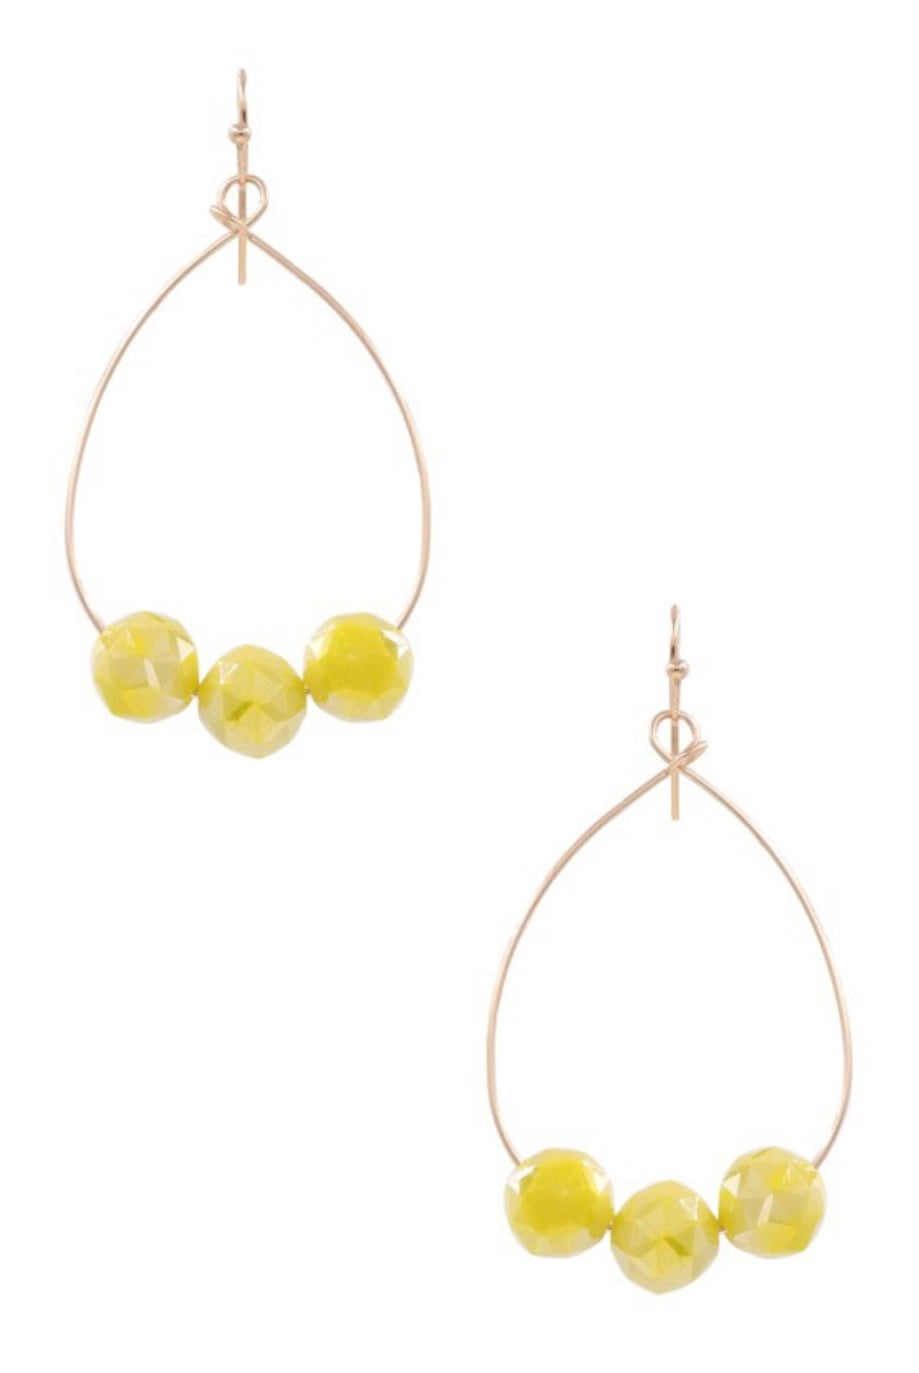 Teardrop 3 Bead Earrings - earrings -Jimberly's Boutique-Olive Branch-Mississippi